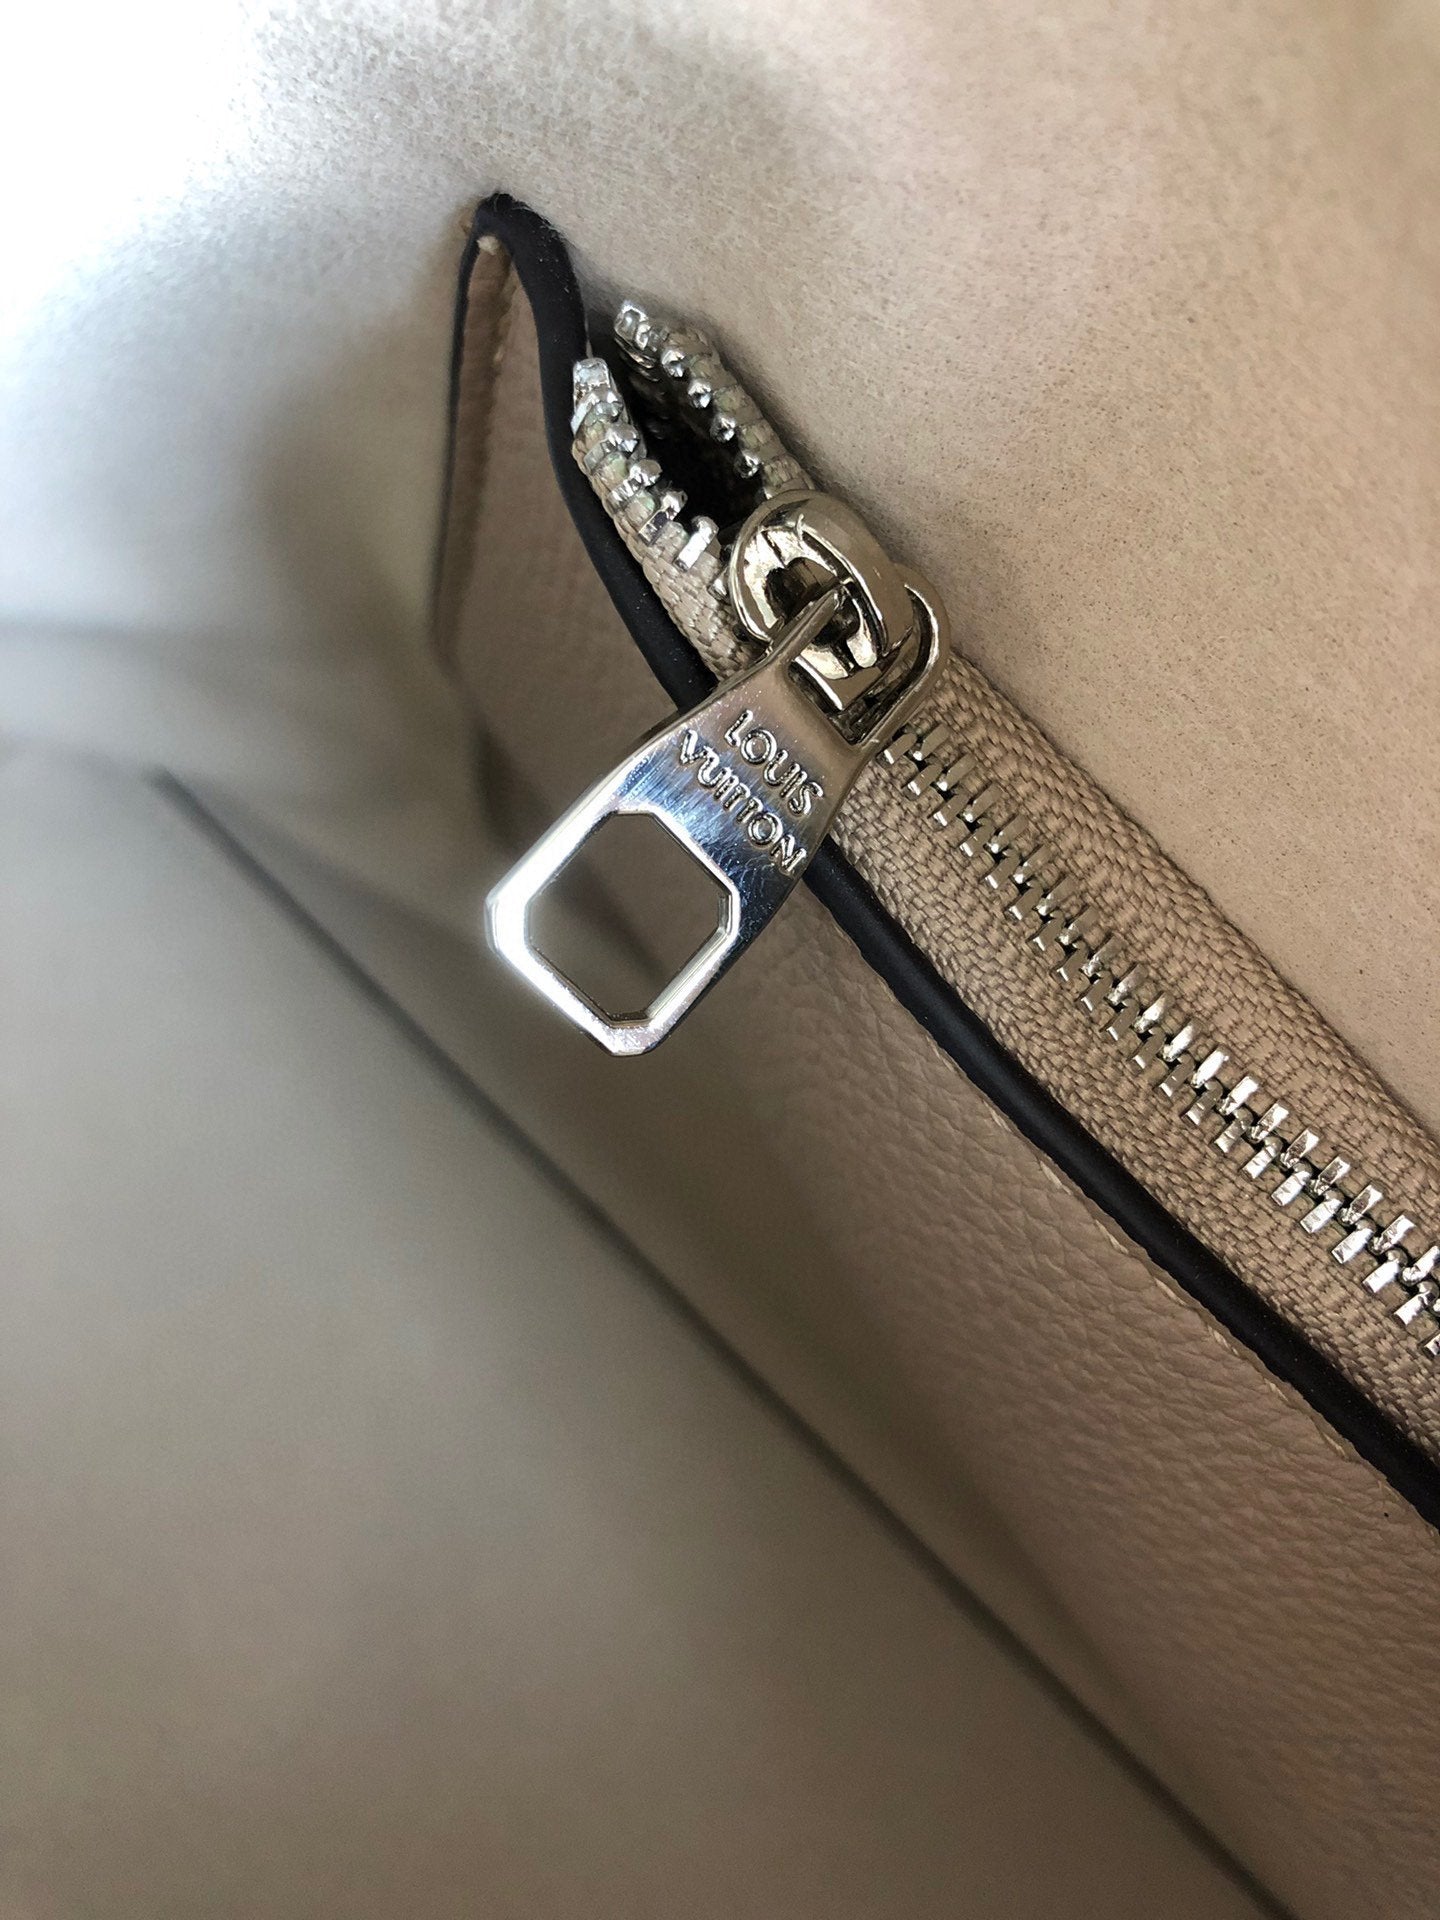 Designer Handbags LN 050